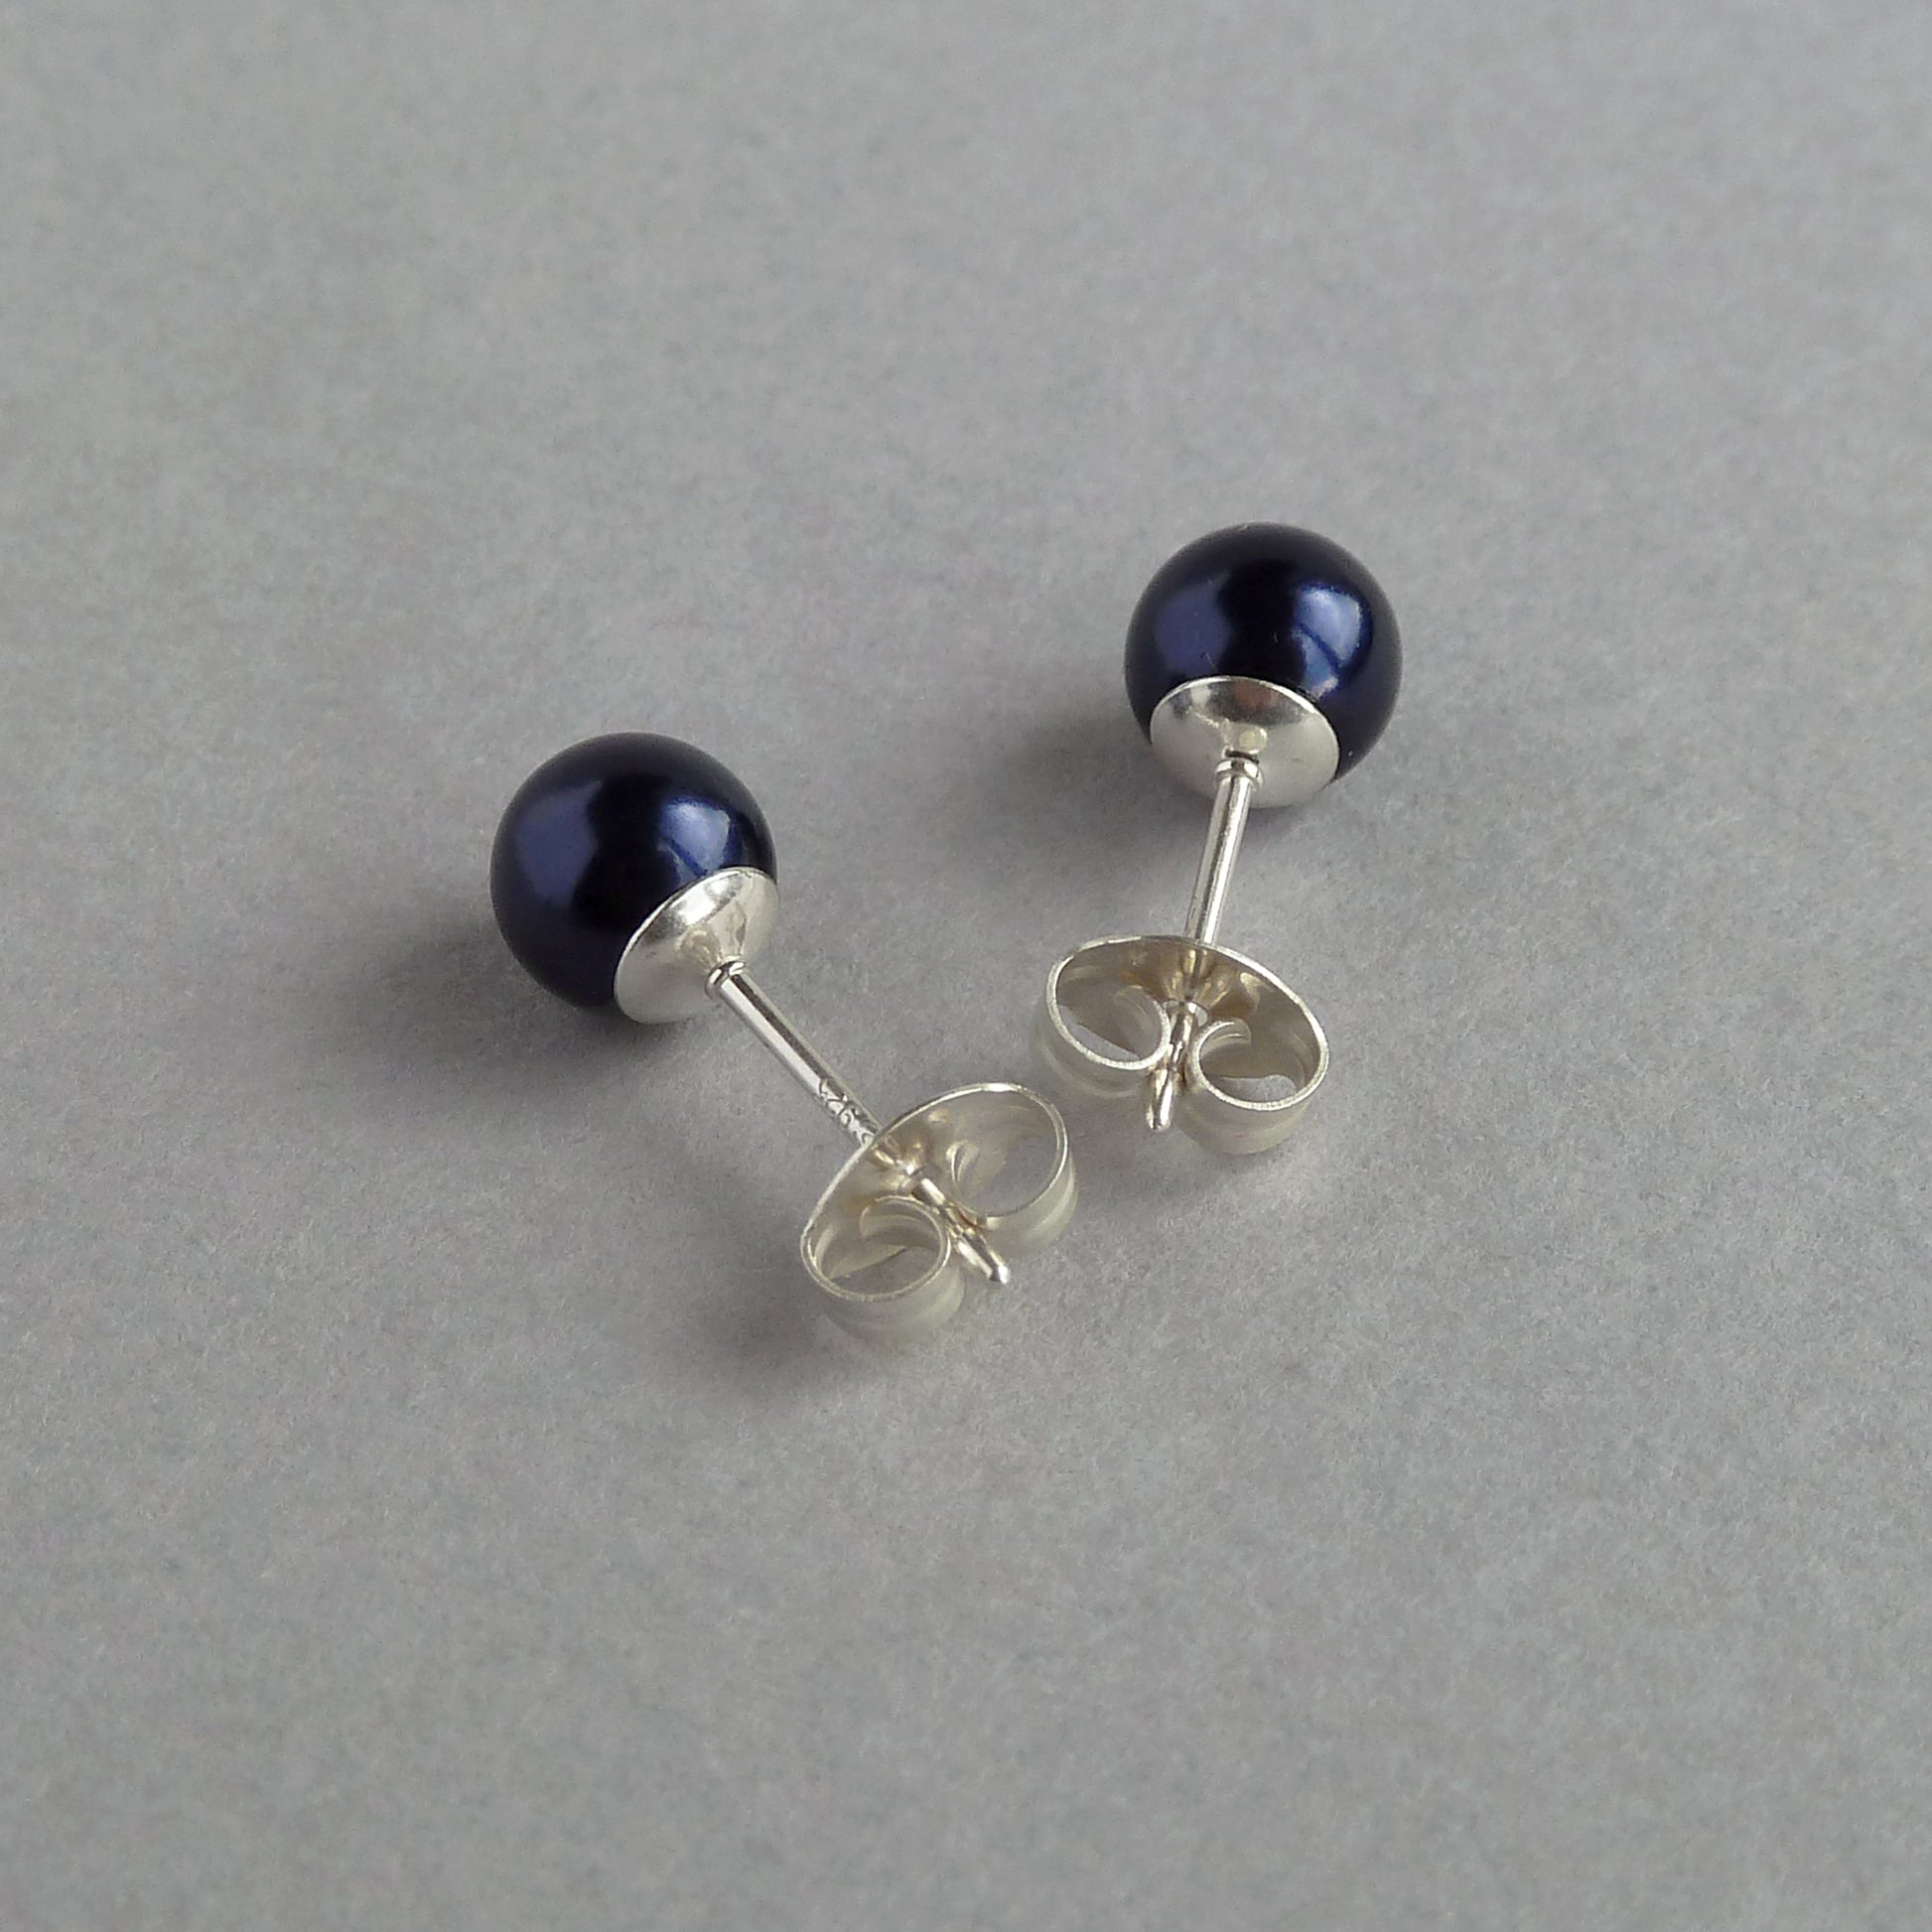 6mm dark blue pearl stud earrings